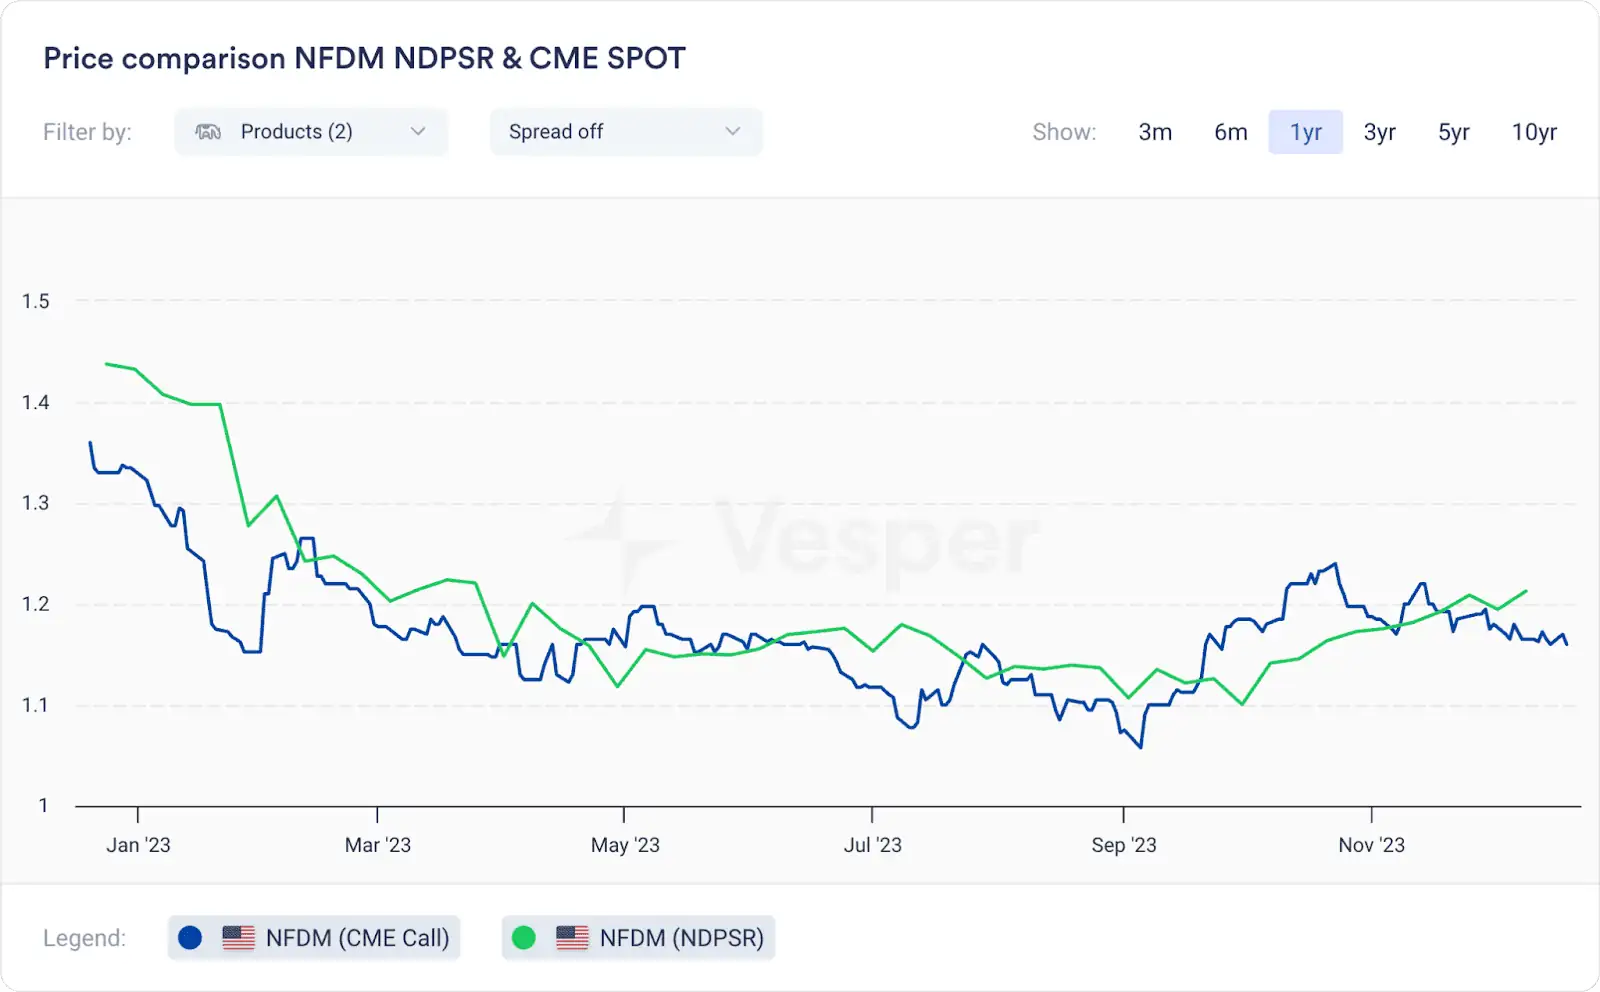 NFDM NDPSR CME SPOT price comparison